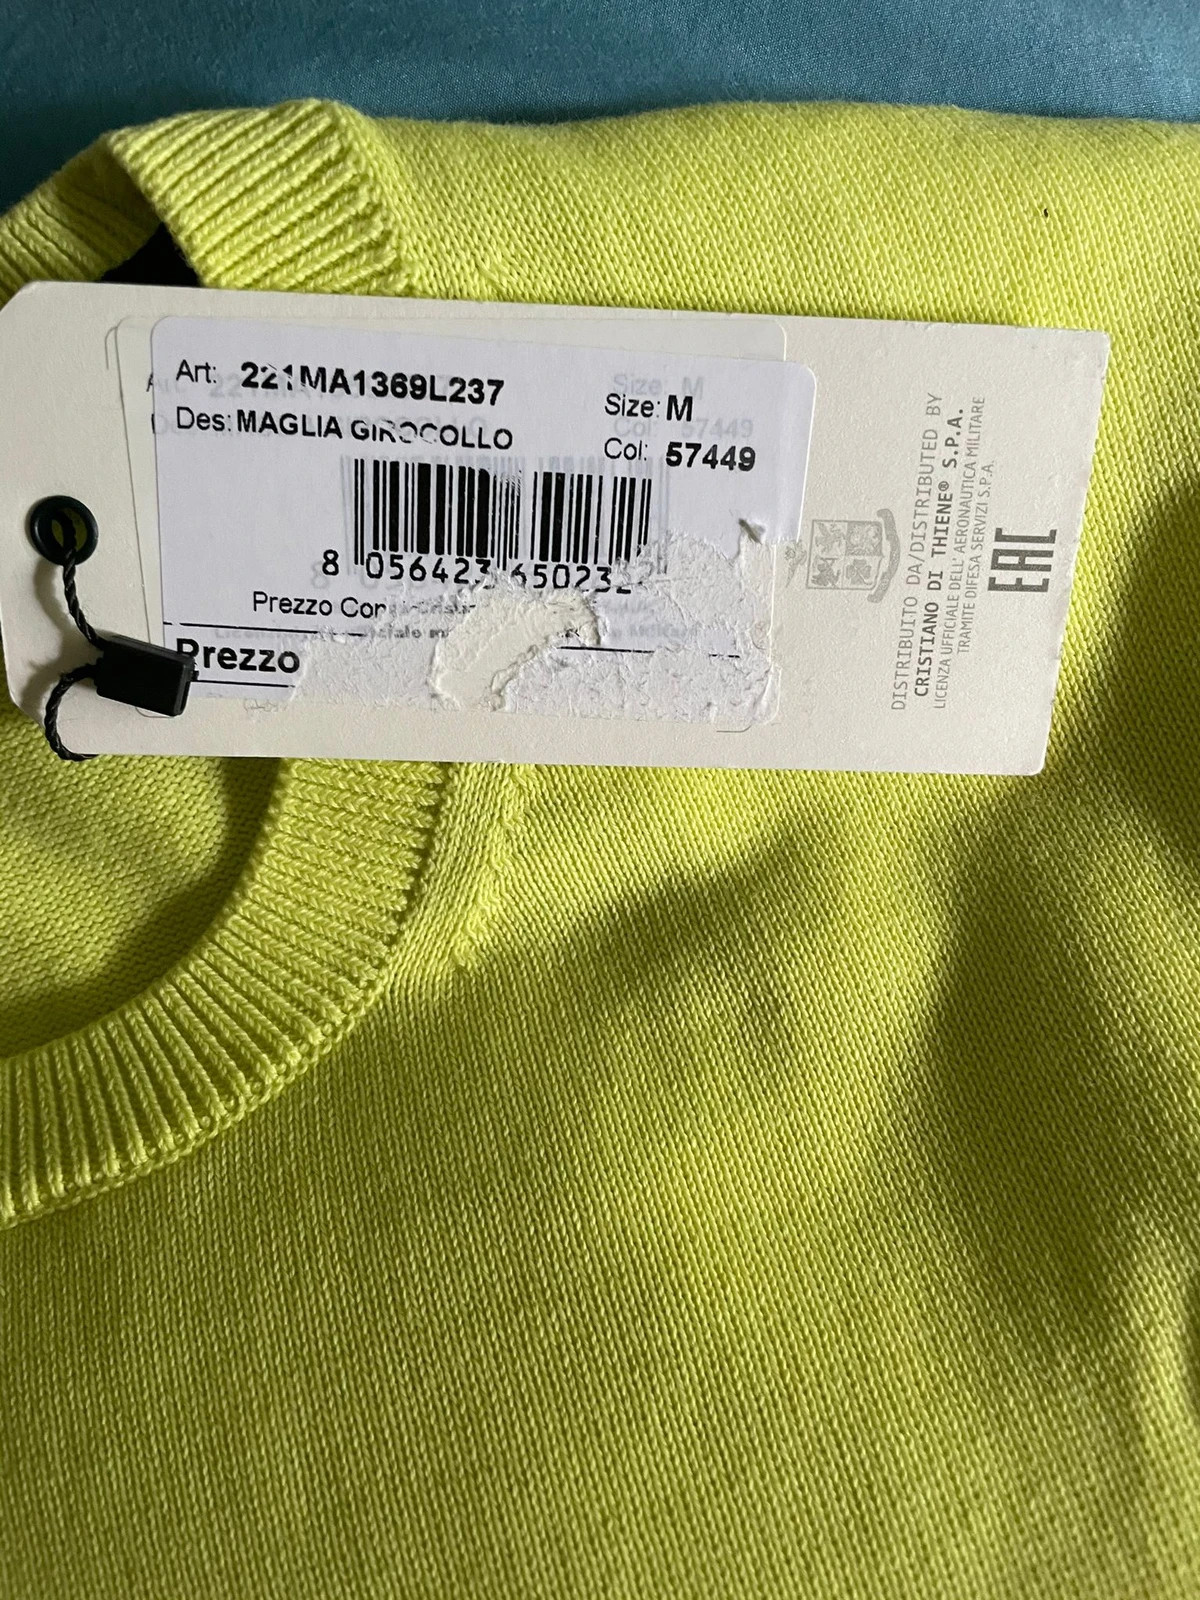 Maglione nuovo con etichetta vendo causa taglia sbagliata